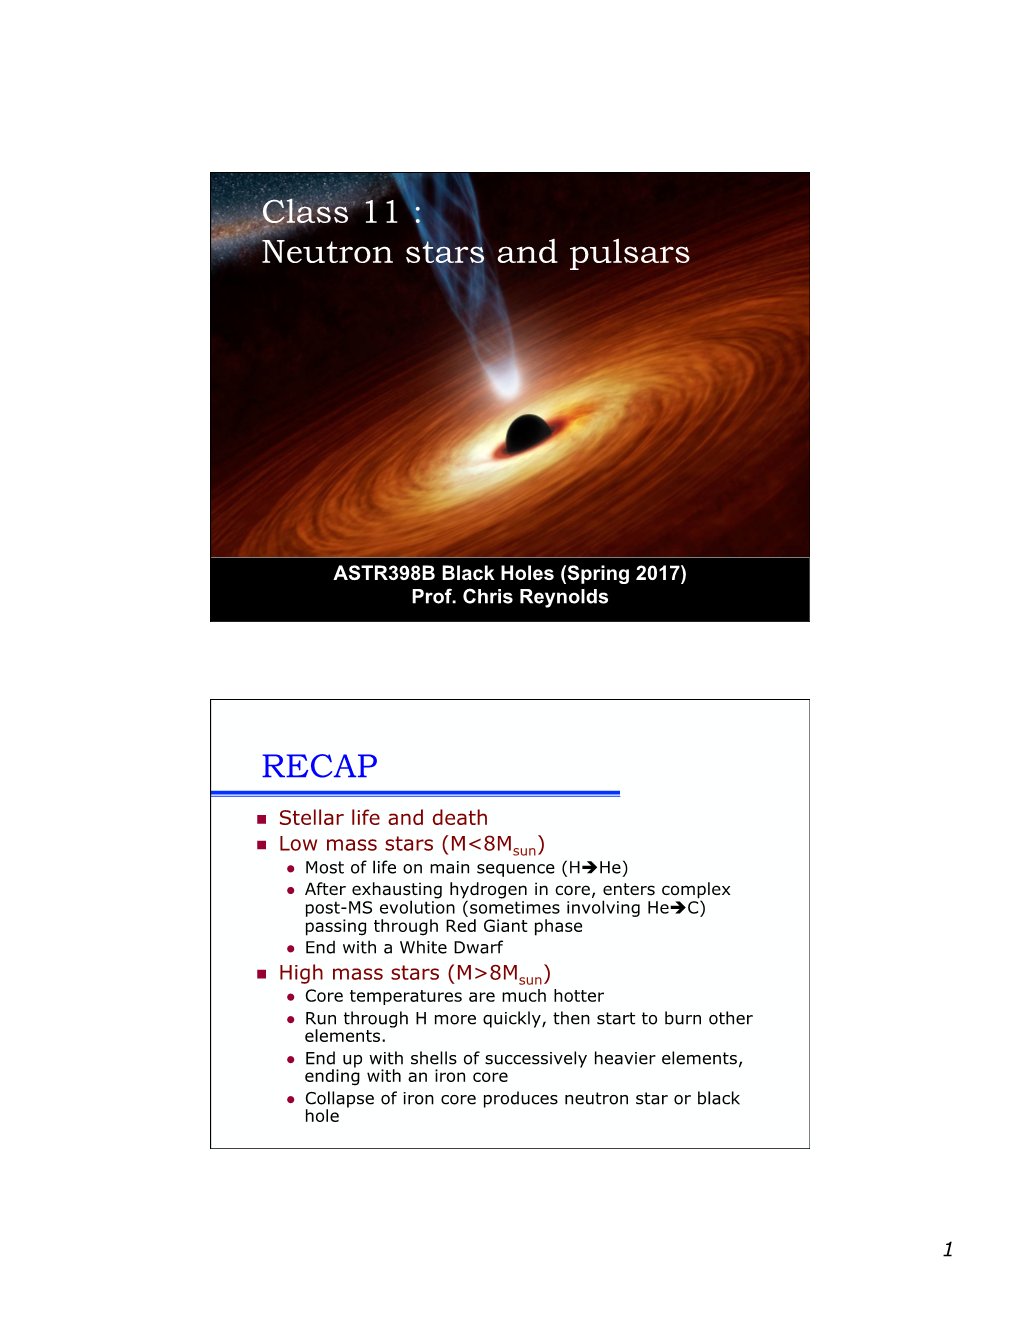 Class 11 : Neutron Stars and Pulsars RECAP